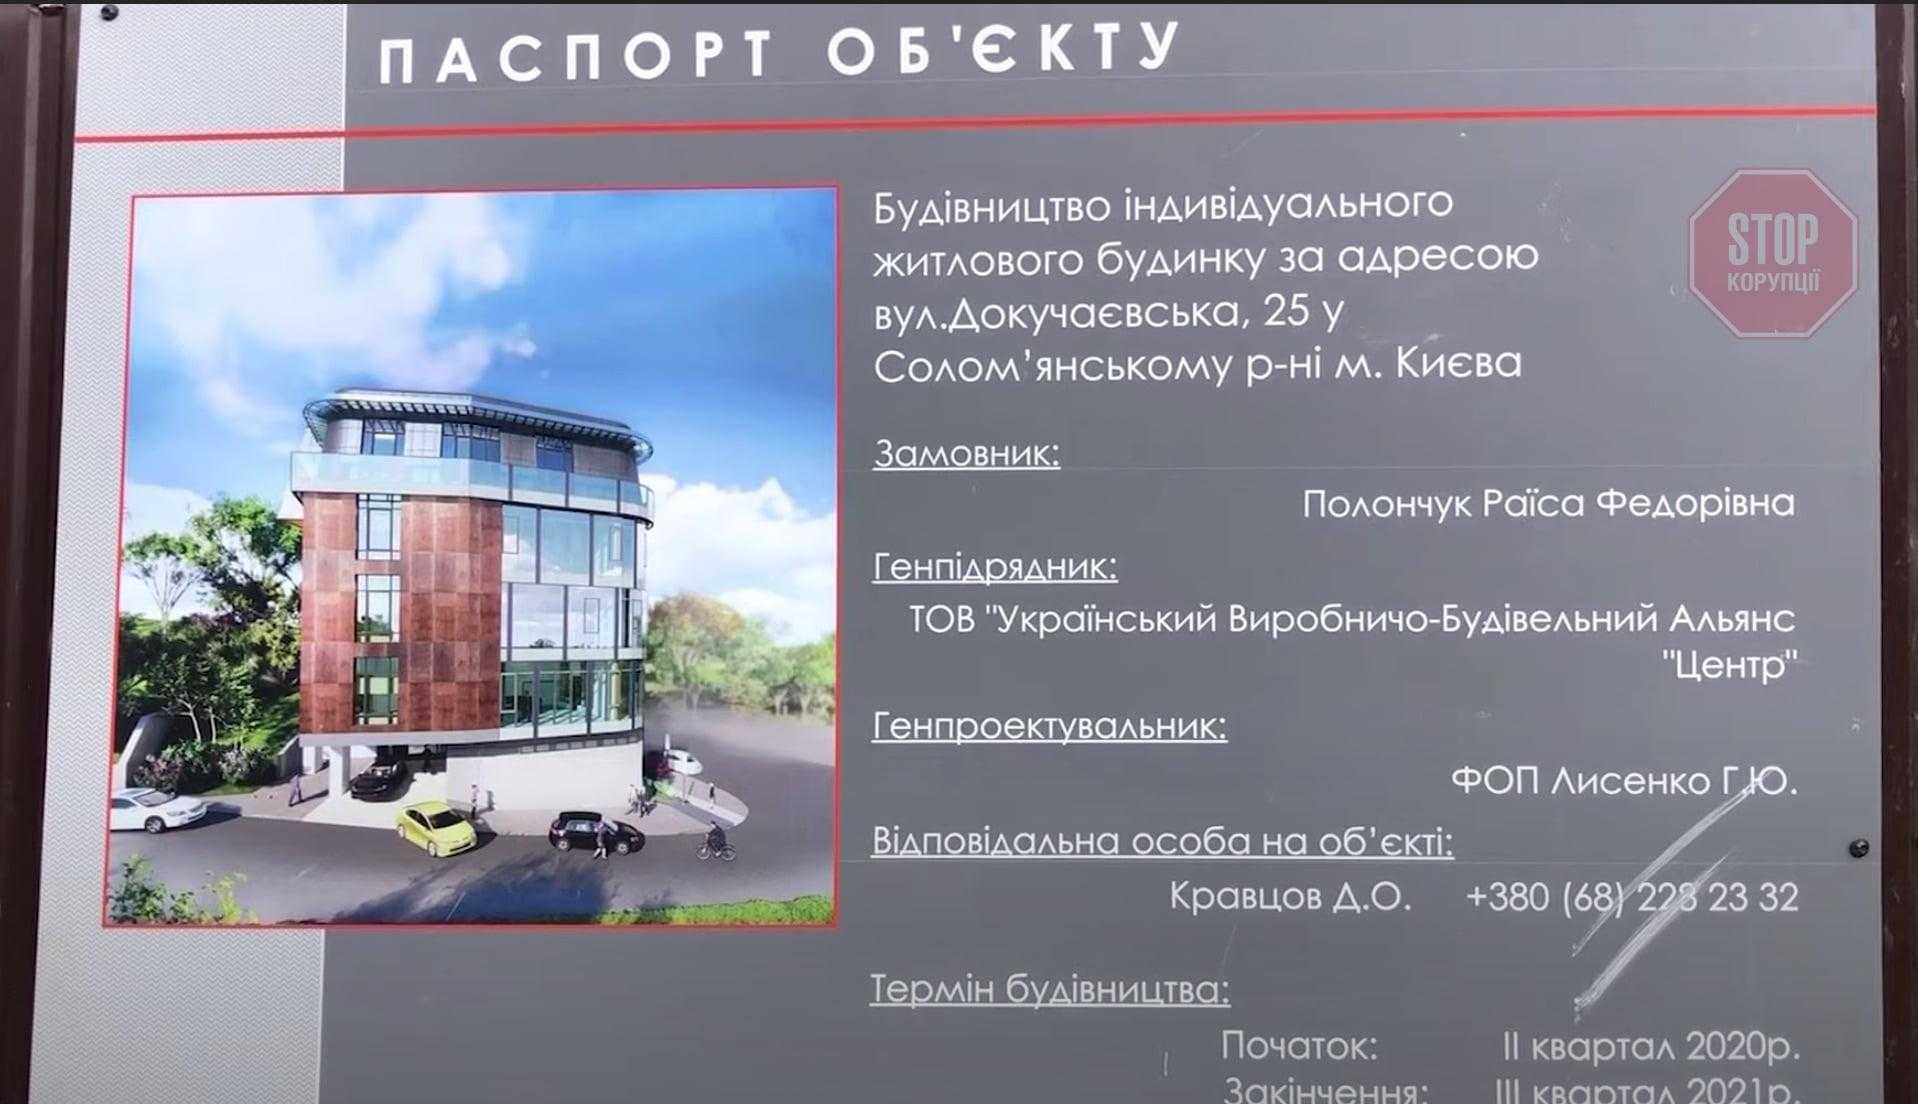 Вместо дачного домика – высотка: в Киеве несанкционированно возводят бизнес-центр